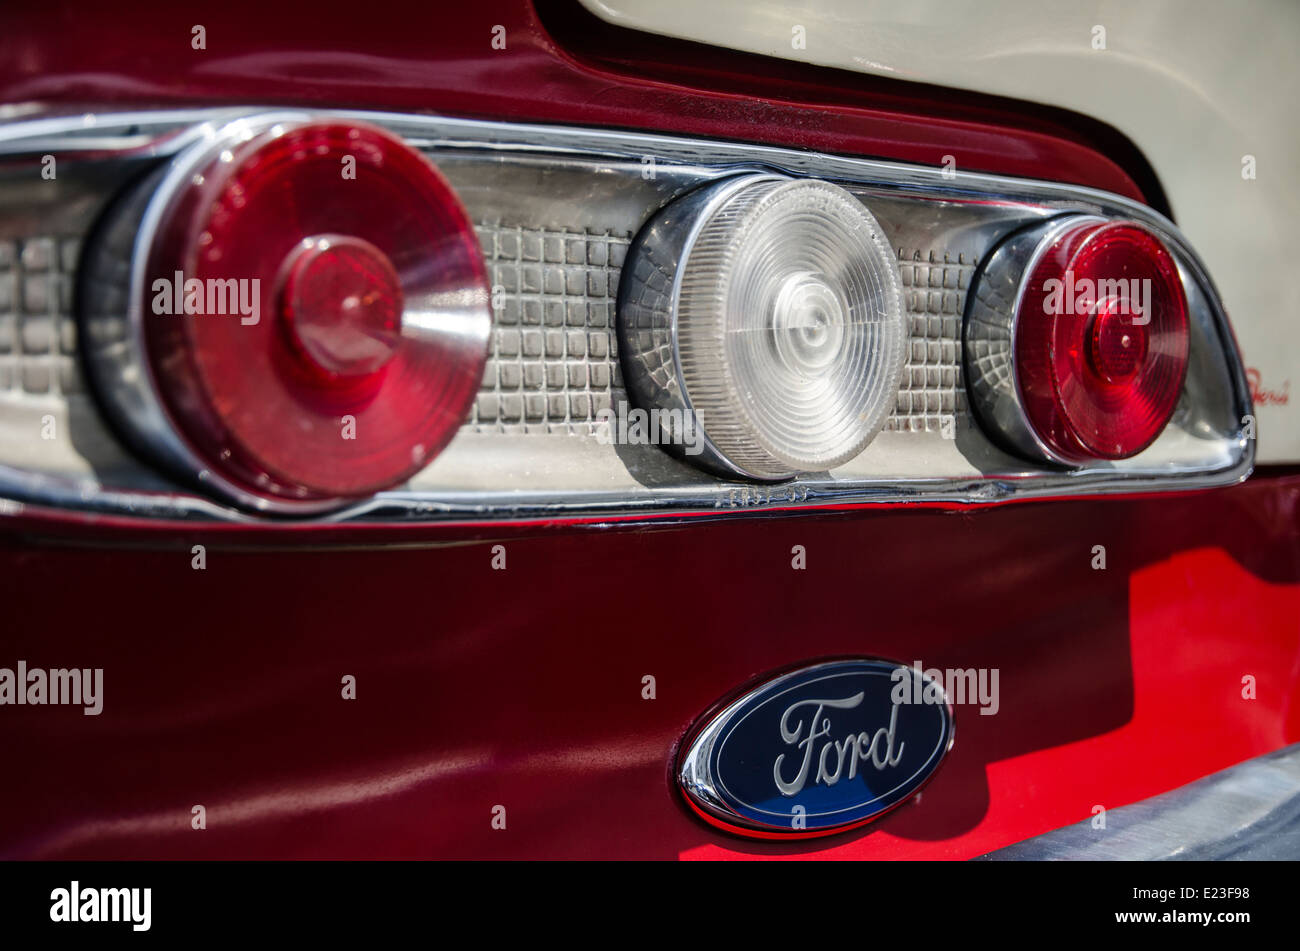 Classic Ford Auto. Stockfoto